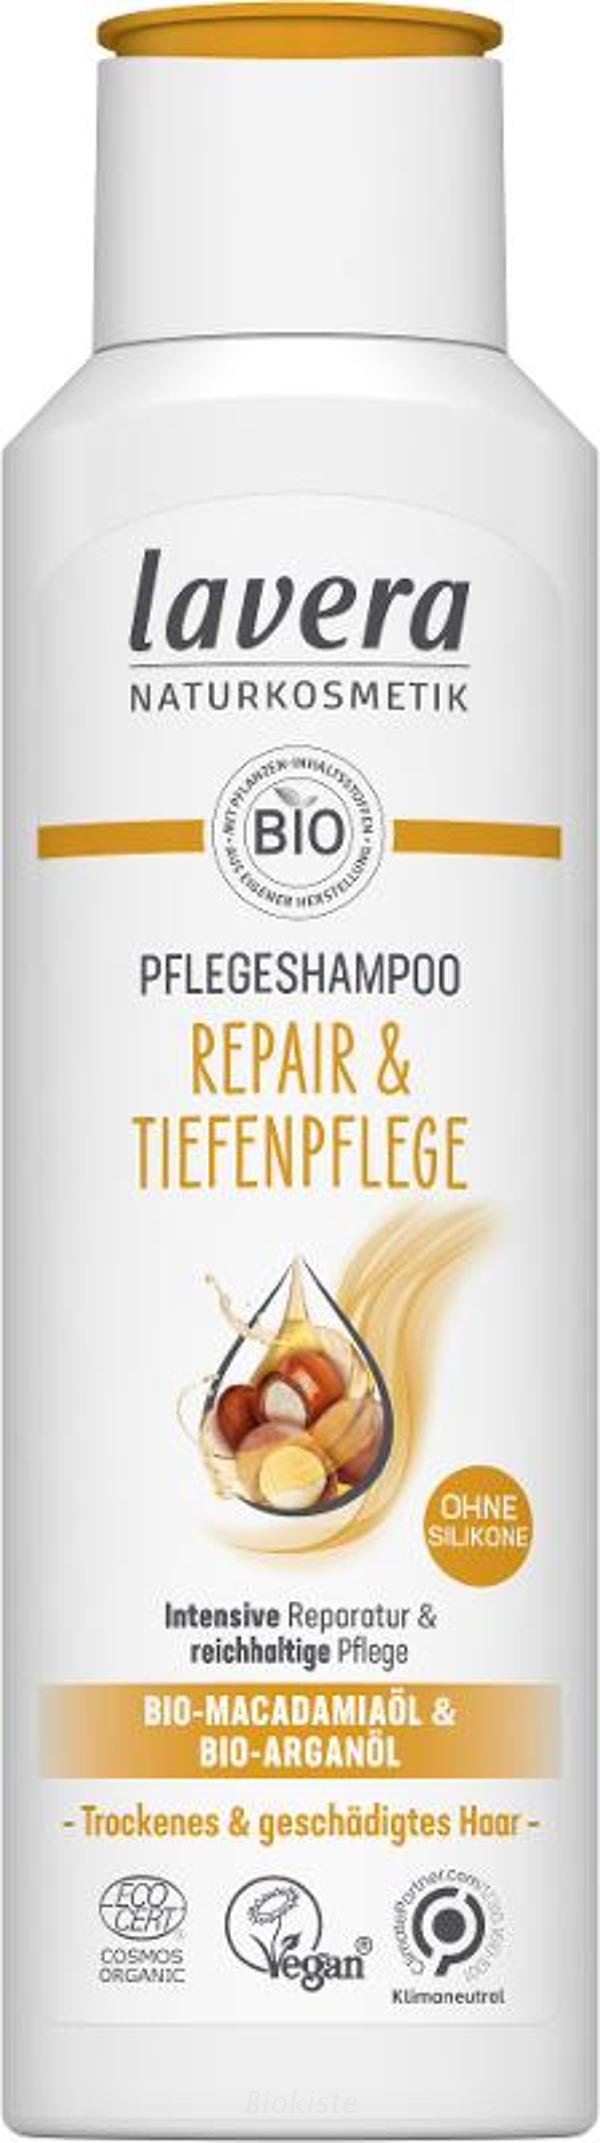 Produktfoto zu Shampoo Repair und Pflege 250 ml